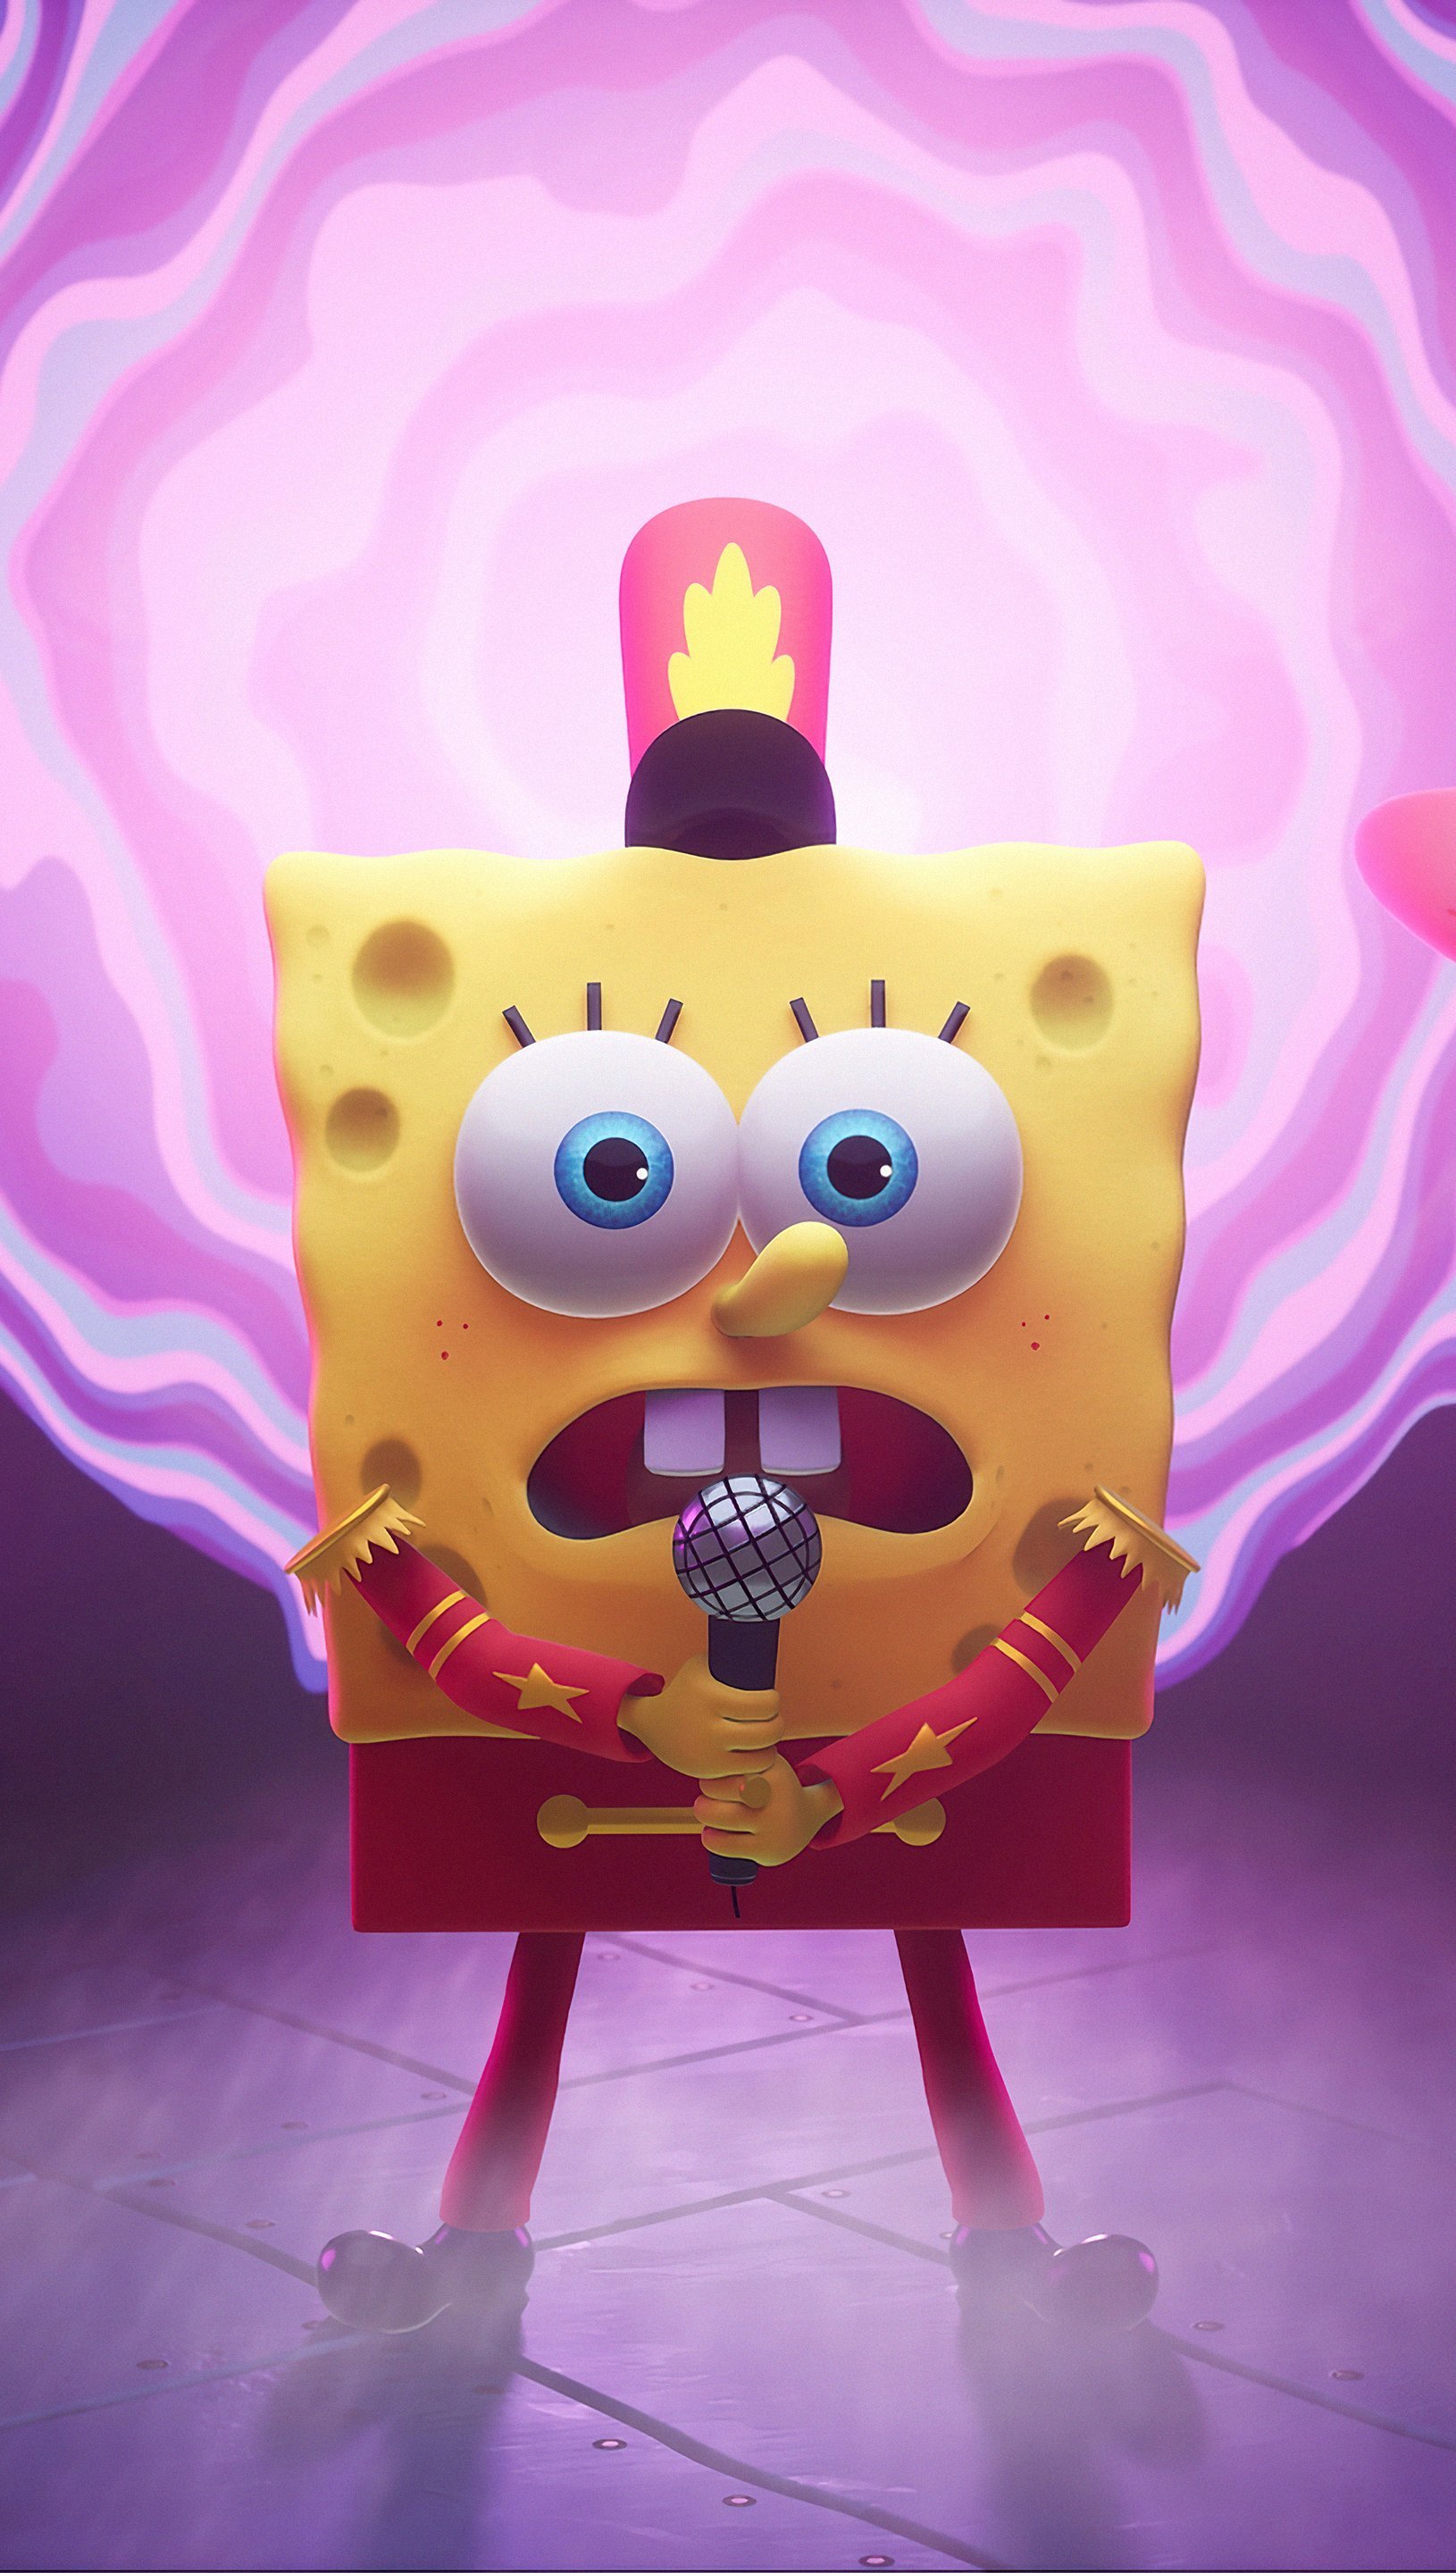 Wallpaper Spongebob Squarepants singing in The cosmic Shake Vertical